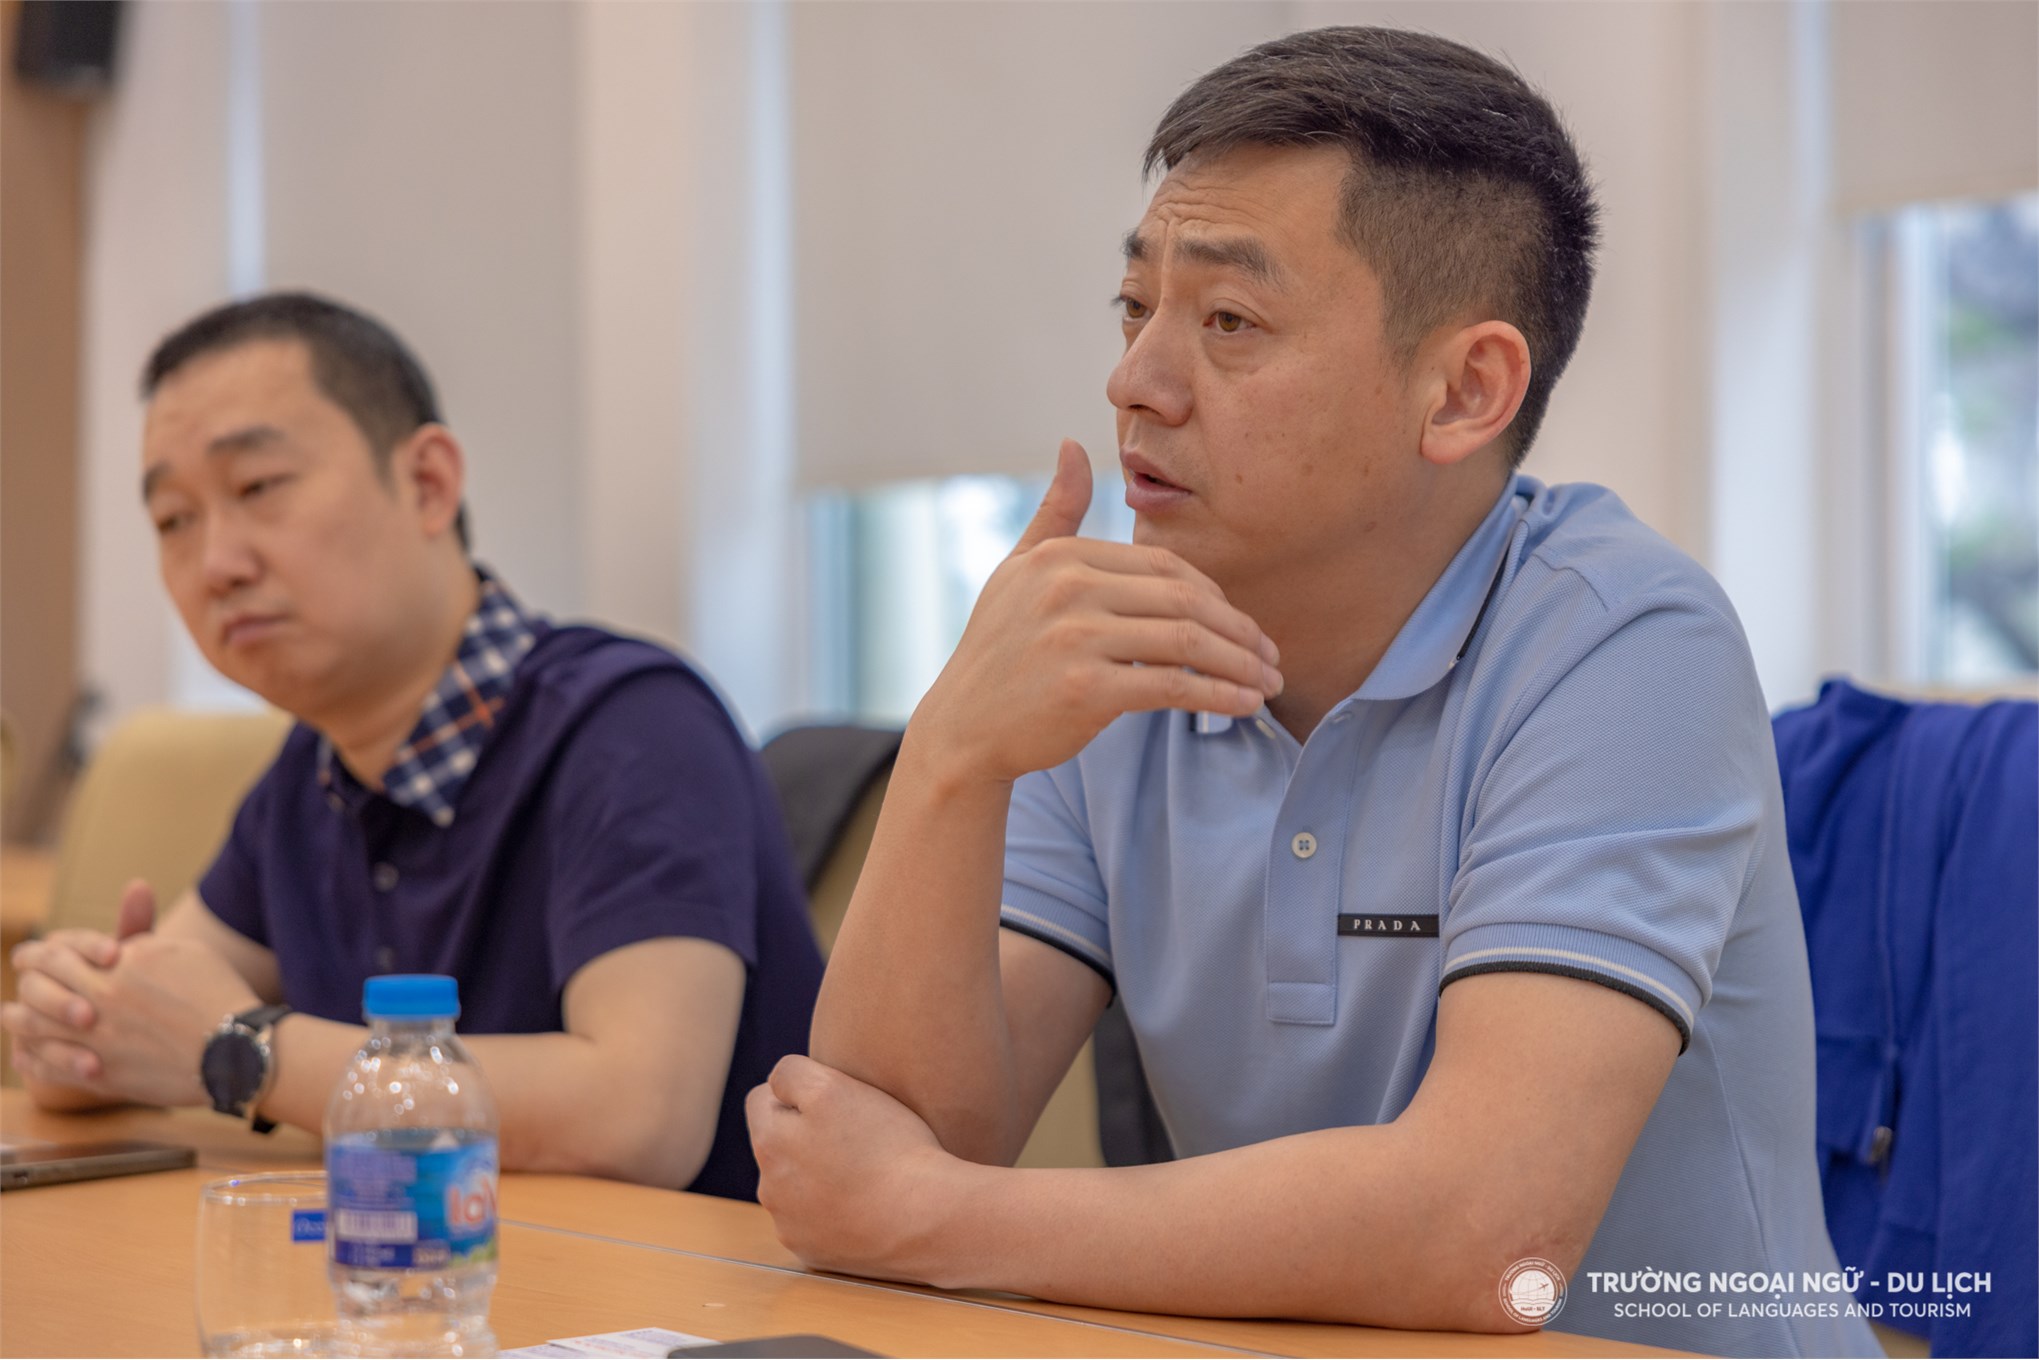 Kết nối hợp tác giữa Trường Ngoại ngữ - Du lịch với Công ty TNHH Cayi Technology Việt Nam